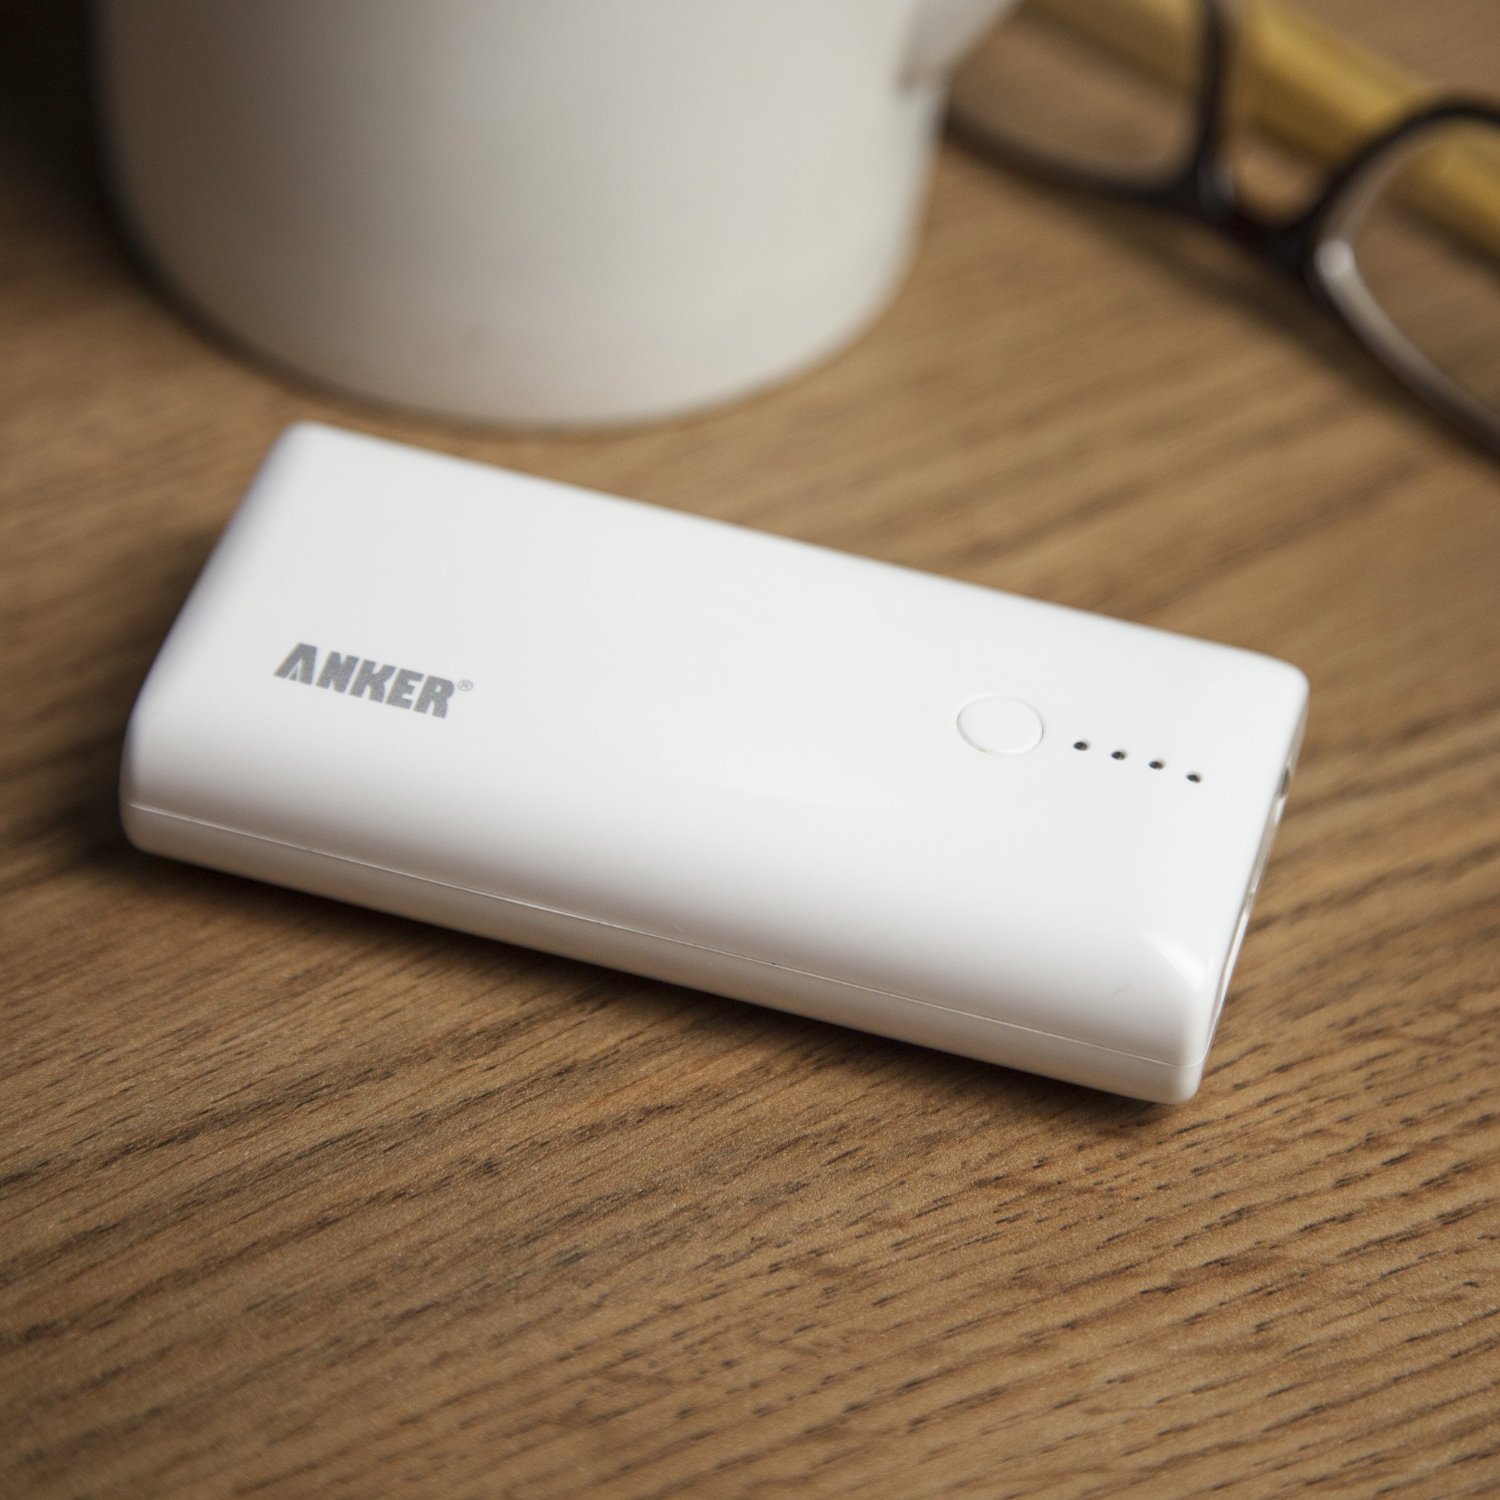 2月20日日限定 『Anker』『Aukey』『Cheero』のモバイルバッテリーが安い!amazonタイムセール中